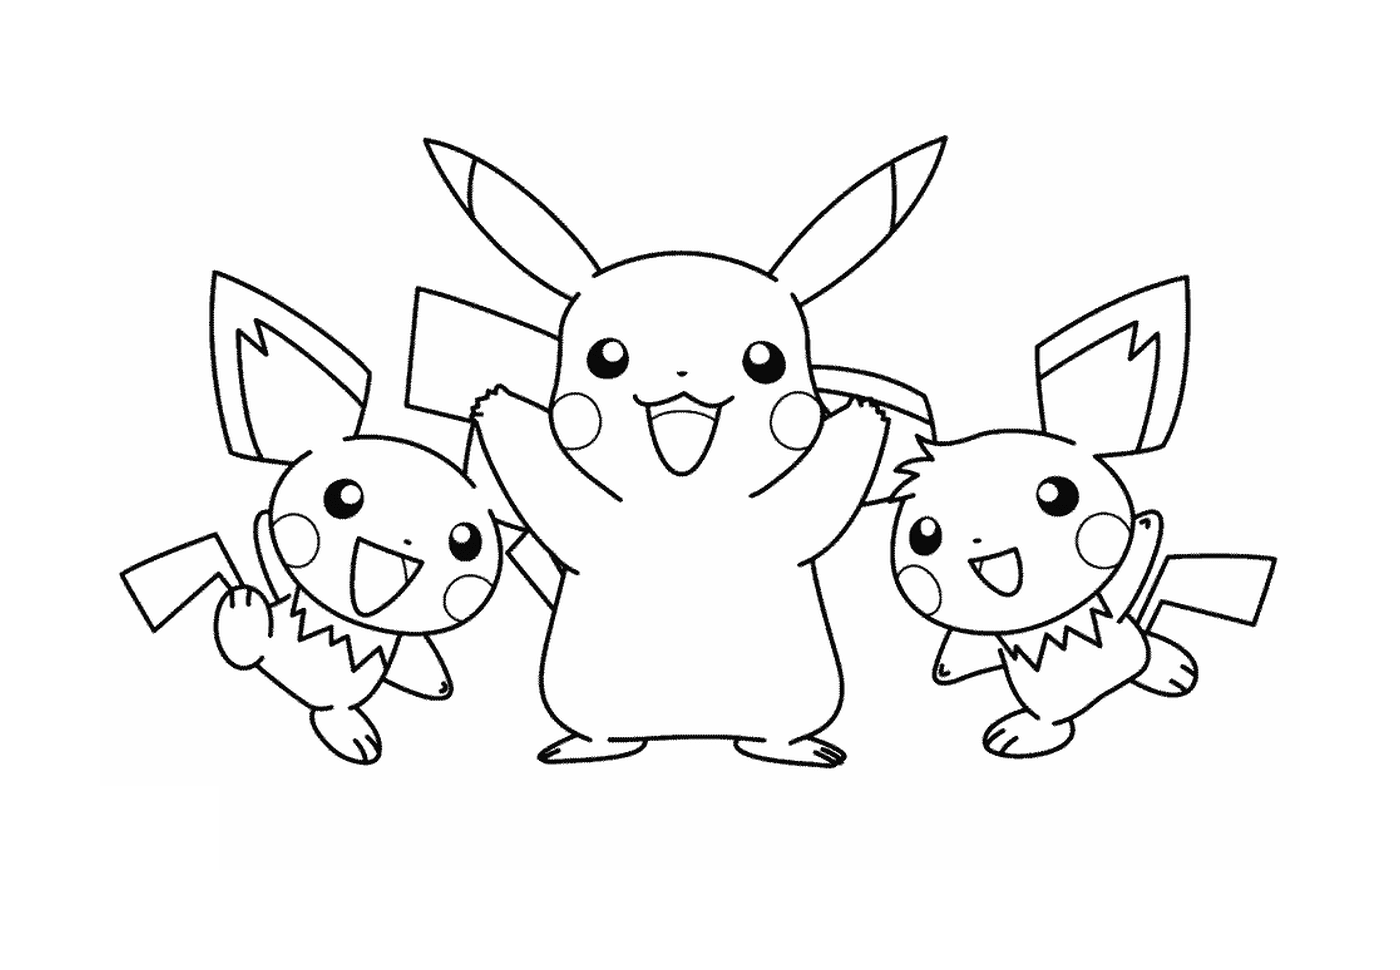  Tres personajes Pikachu juntos 